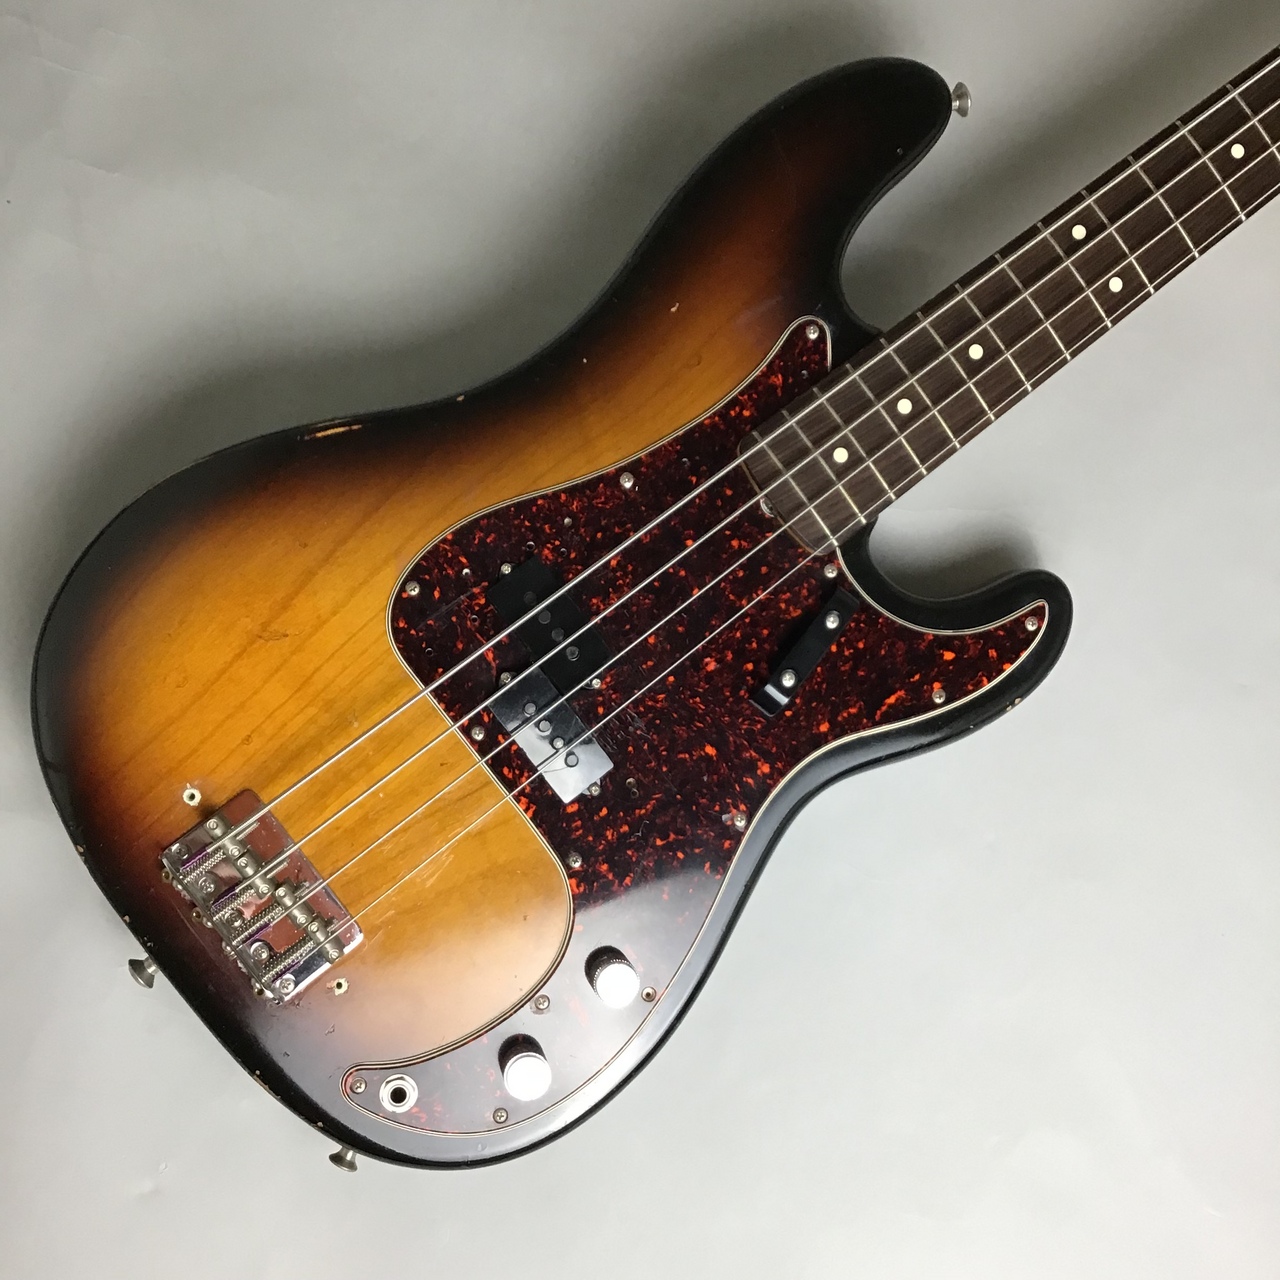 中古入荷情報】Fender 「American Vintage 62 Precision Bass」入荷 